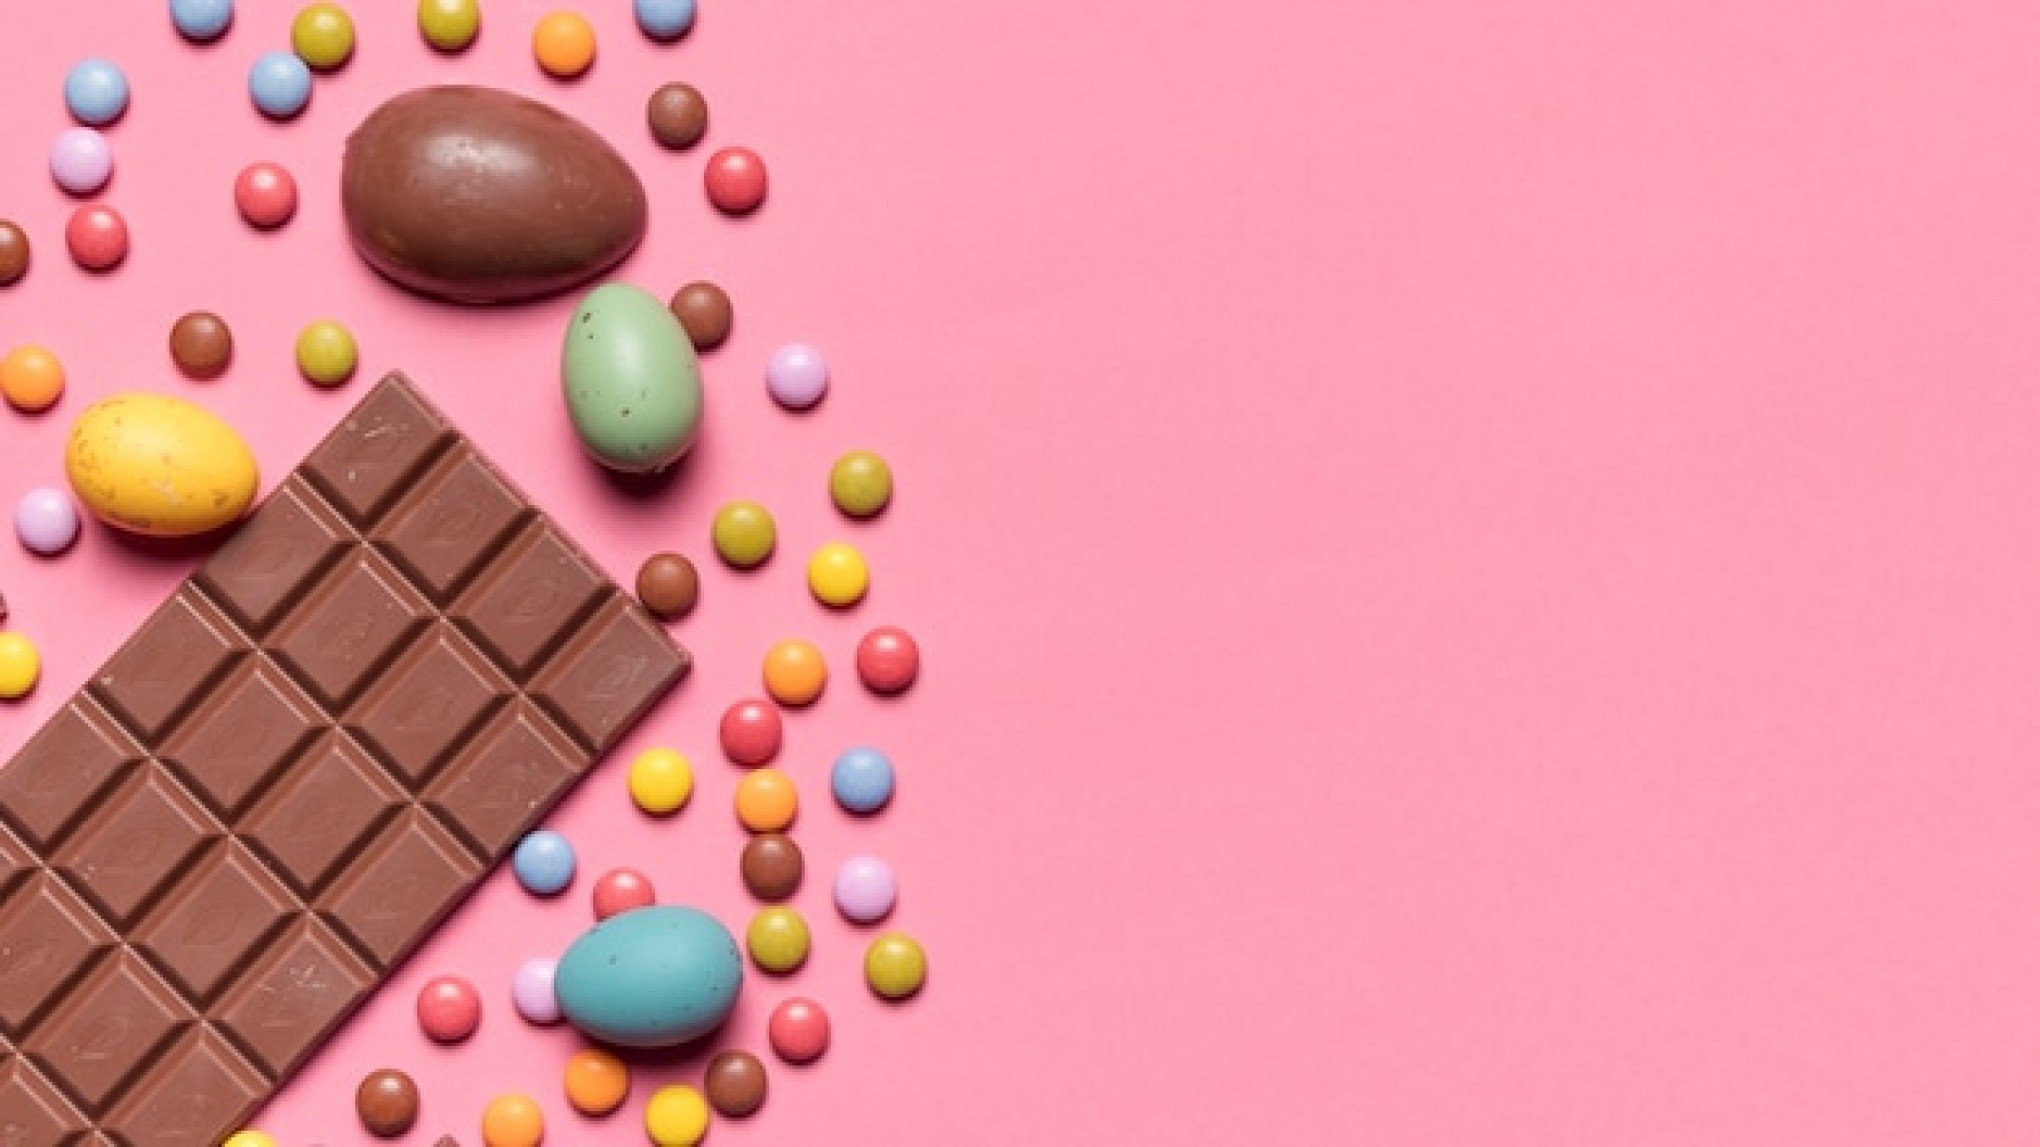 PÁSCOA: Receita saudável e deliciosa com chocolate? Aprenda como fazer